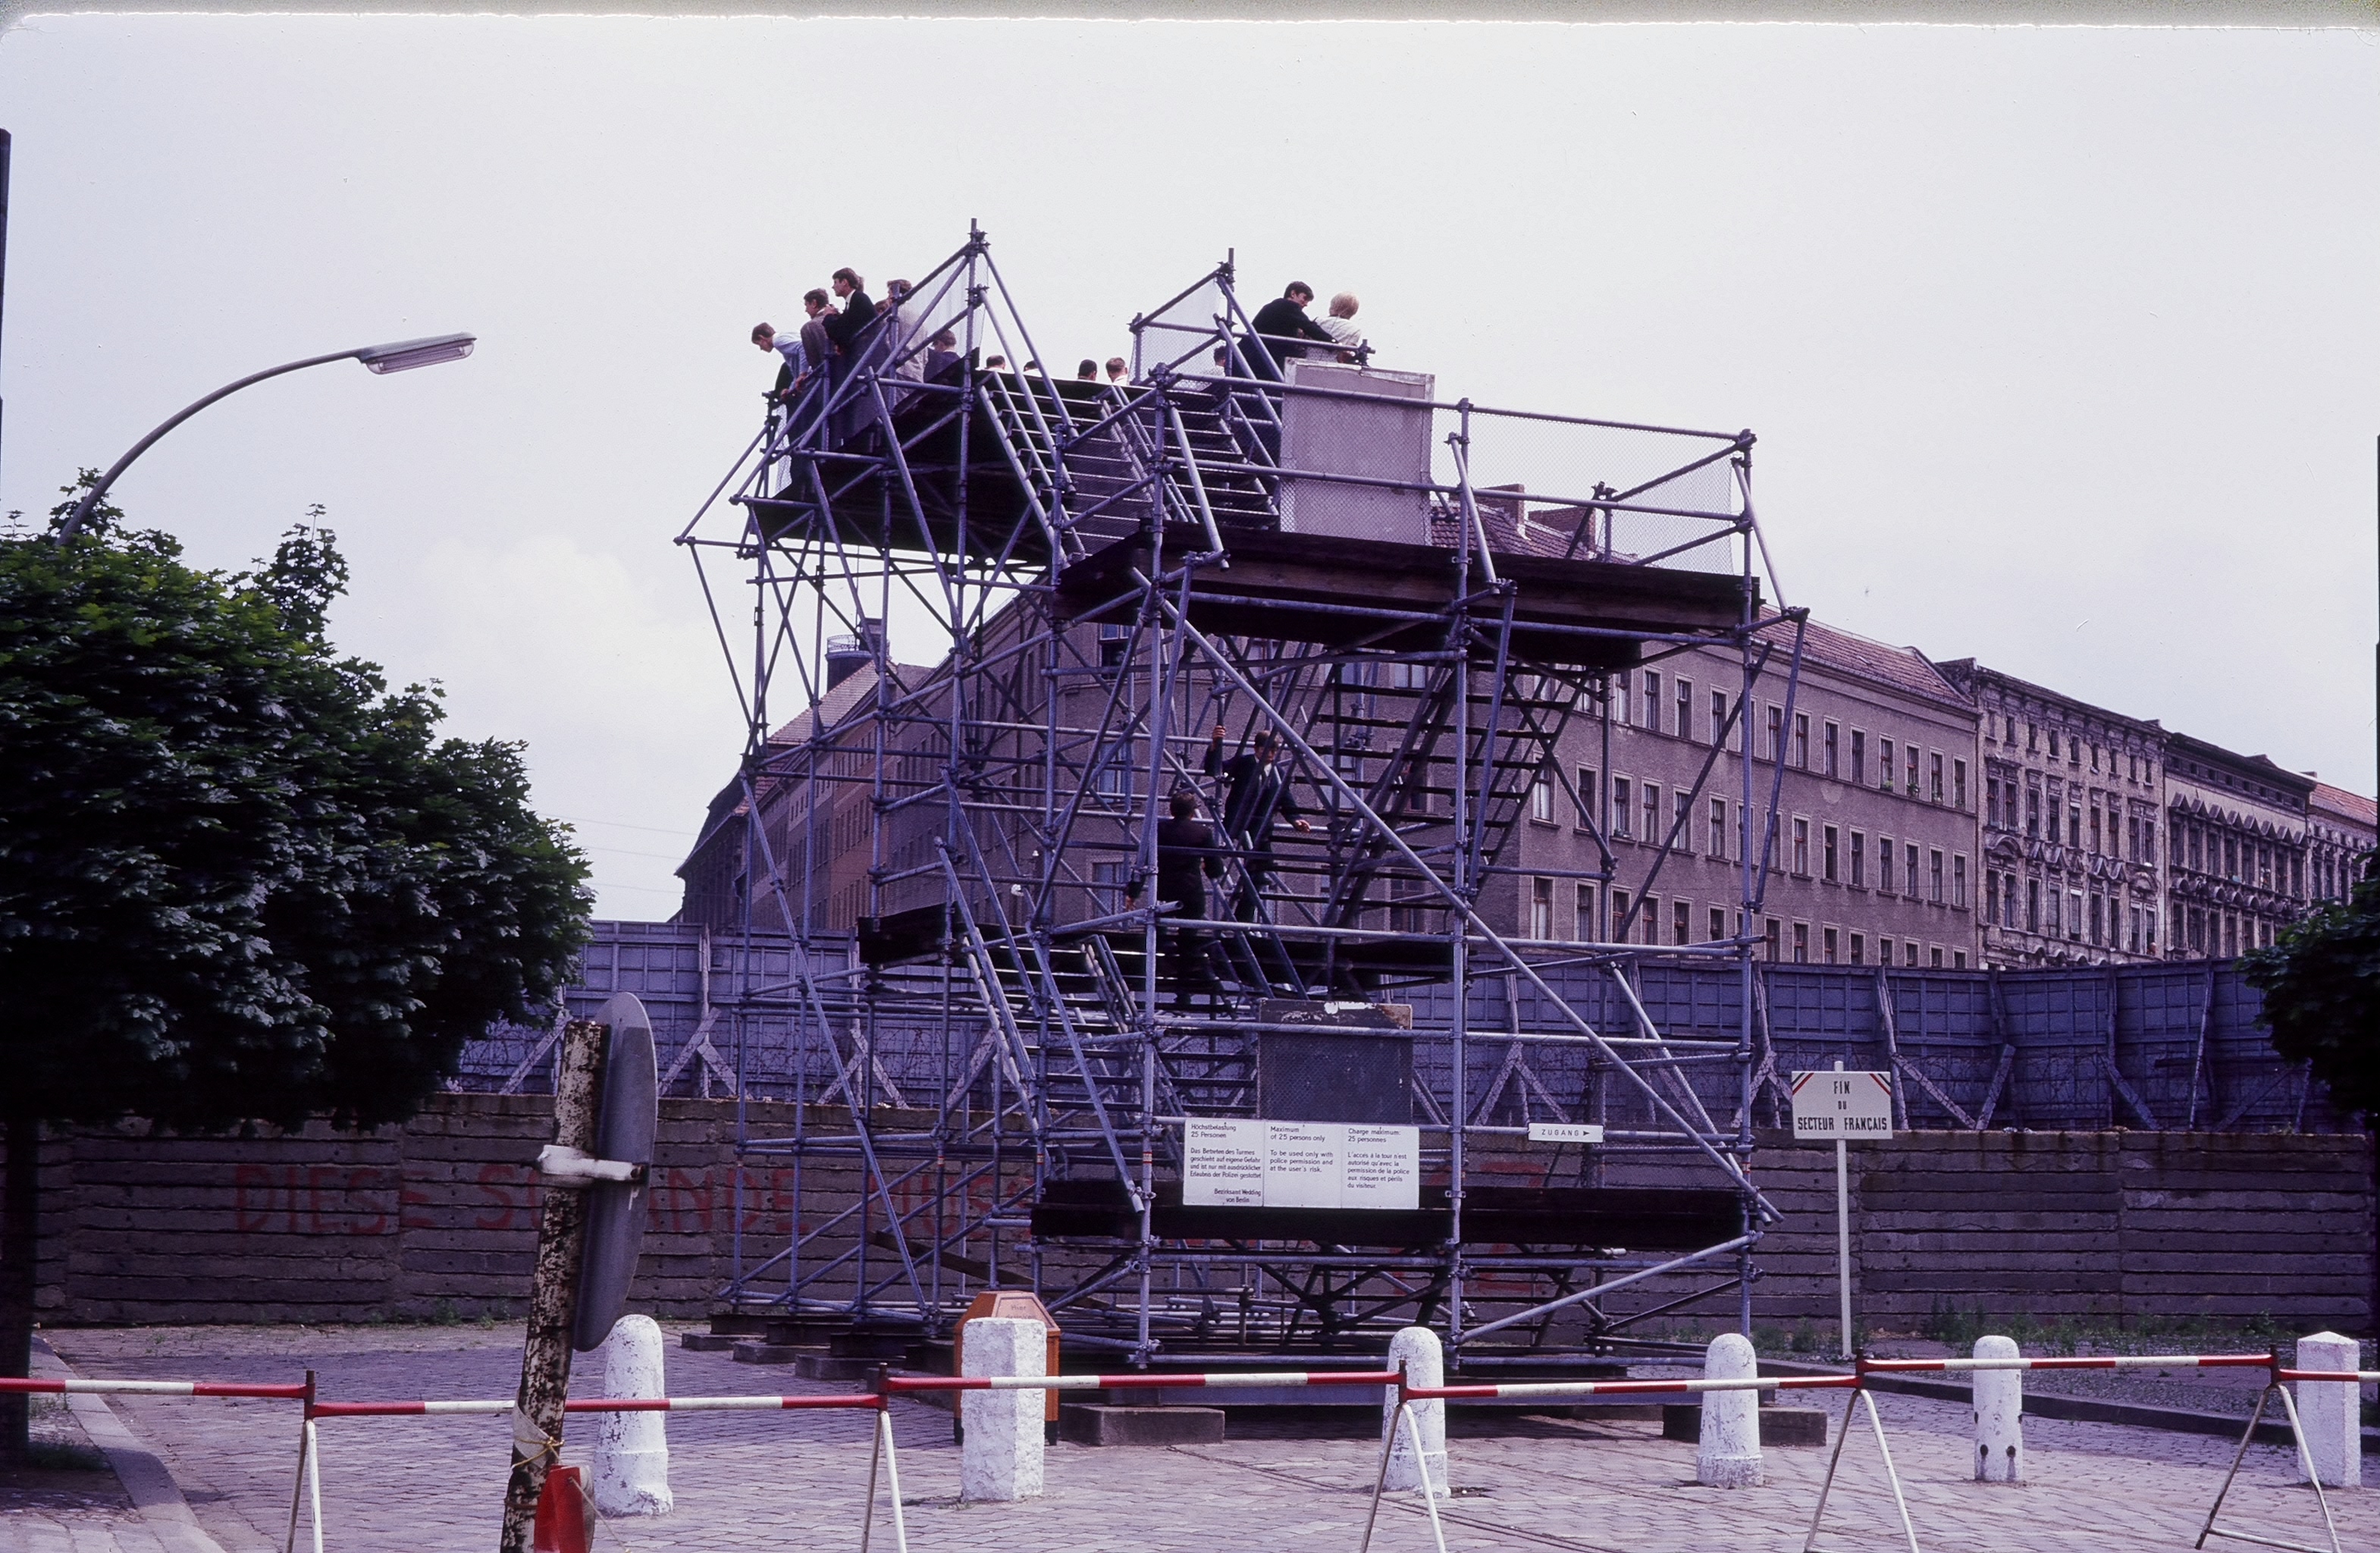 Die Grenze in Berlin 1966